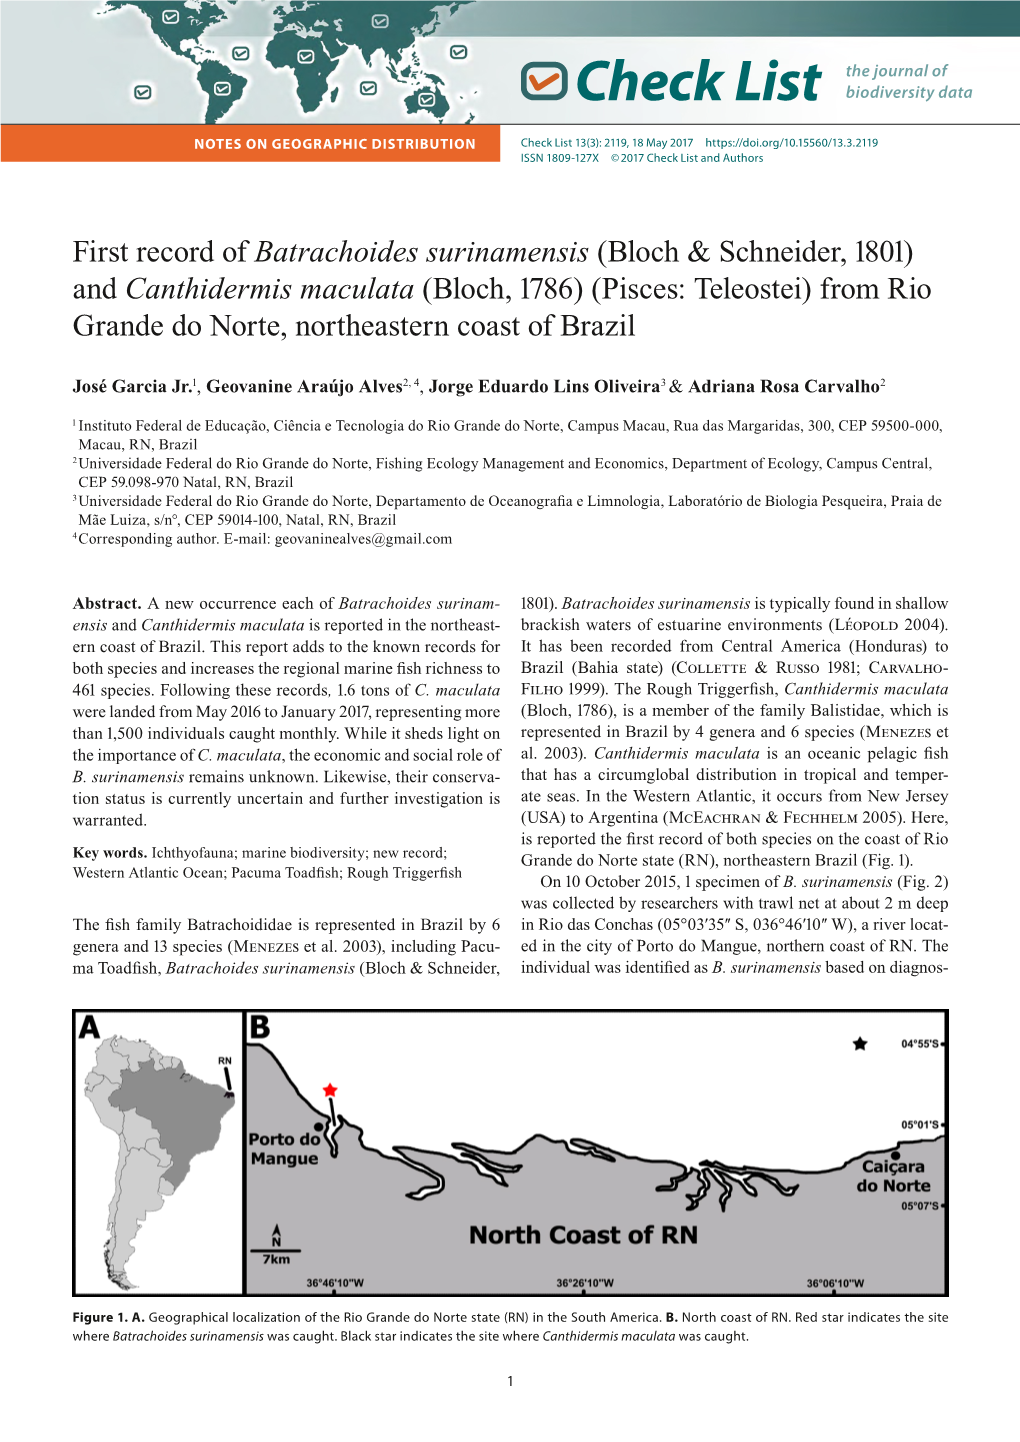 Batrachoides Surinamensis (Bloch & Schneider, 1801) and Canthidermis Maculata (Bloch, 1786) (Pisces: Teleostei) from Rio Grande Do Norte, Northeastern Coast of Brazil